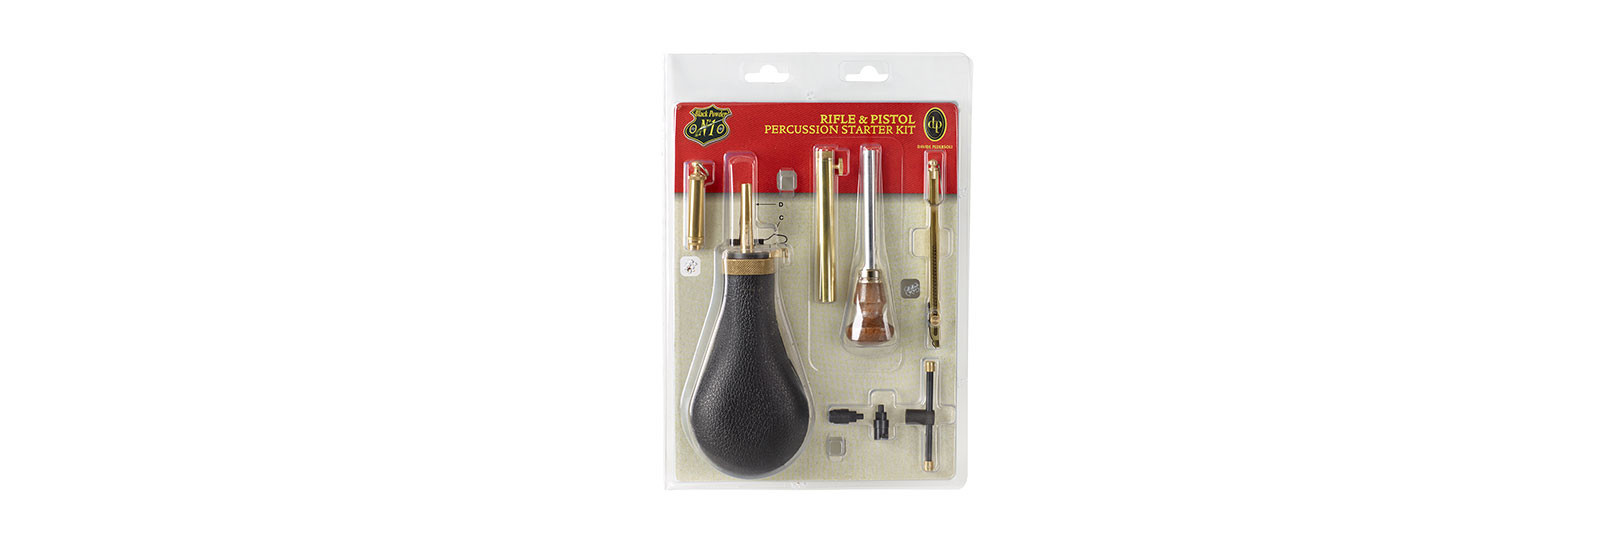 Rifle & pistol black percussion starter kit